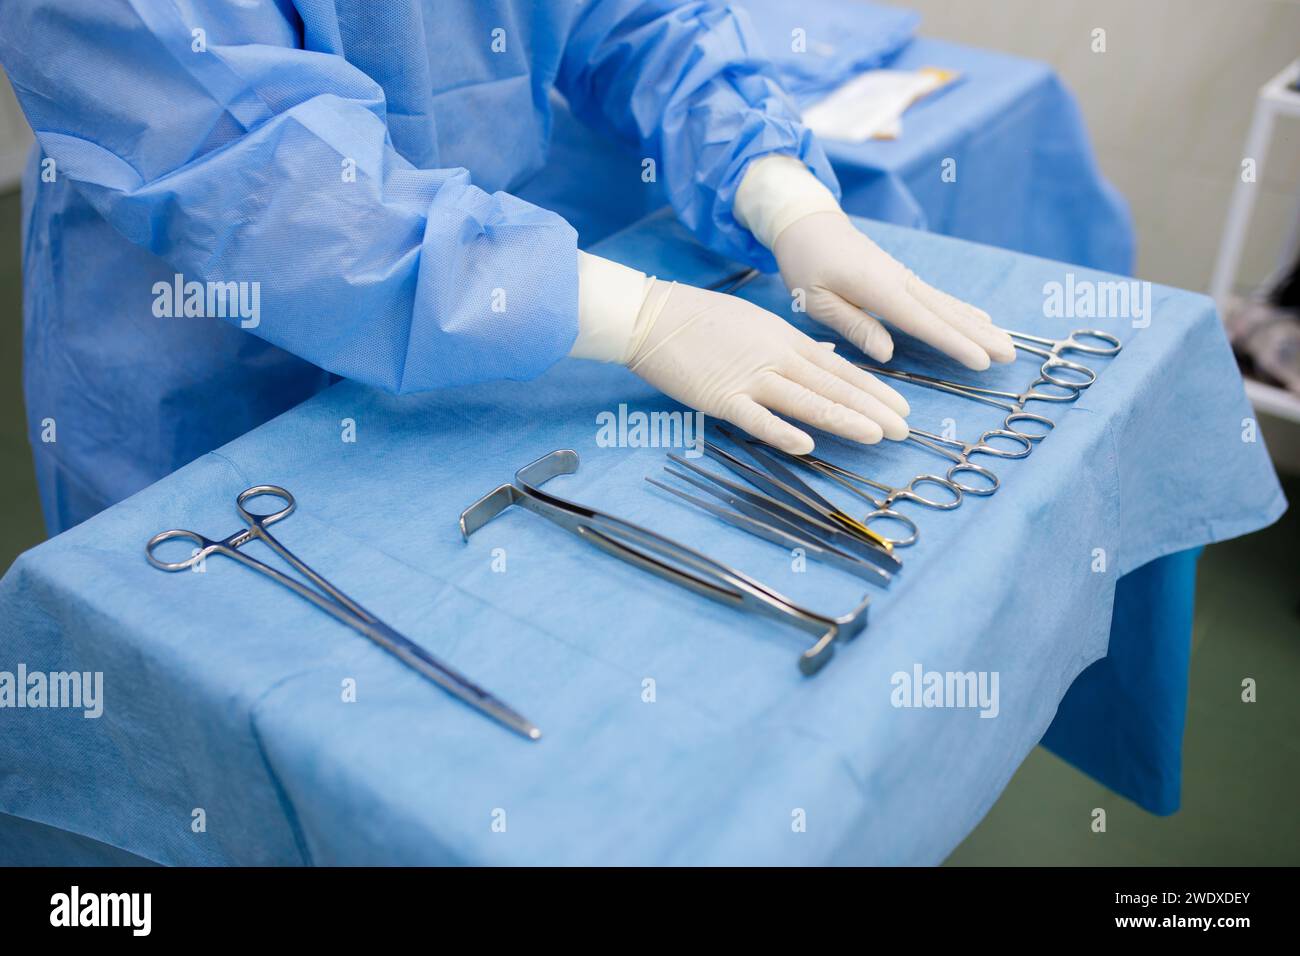 instruments stériles pour la chirurgie sur le plateau et les mains. Photo de haute qualité Banque D'Images